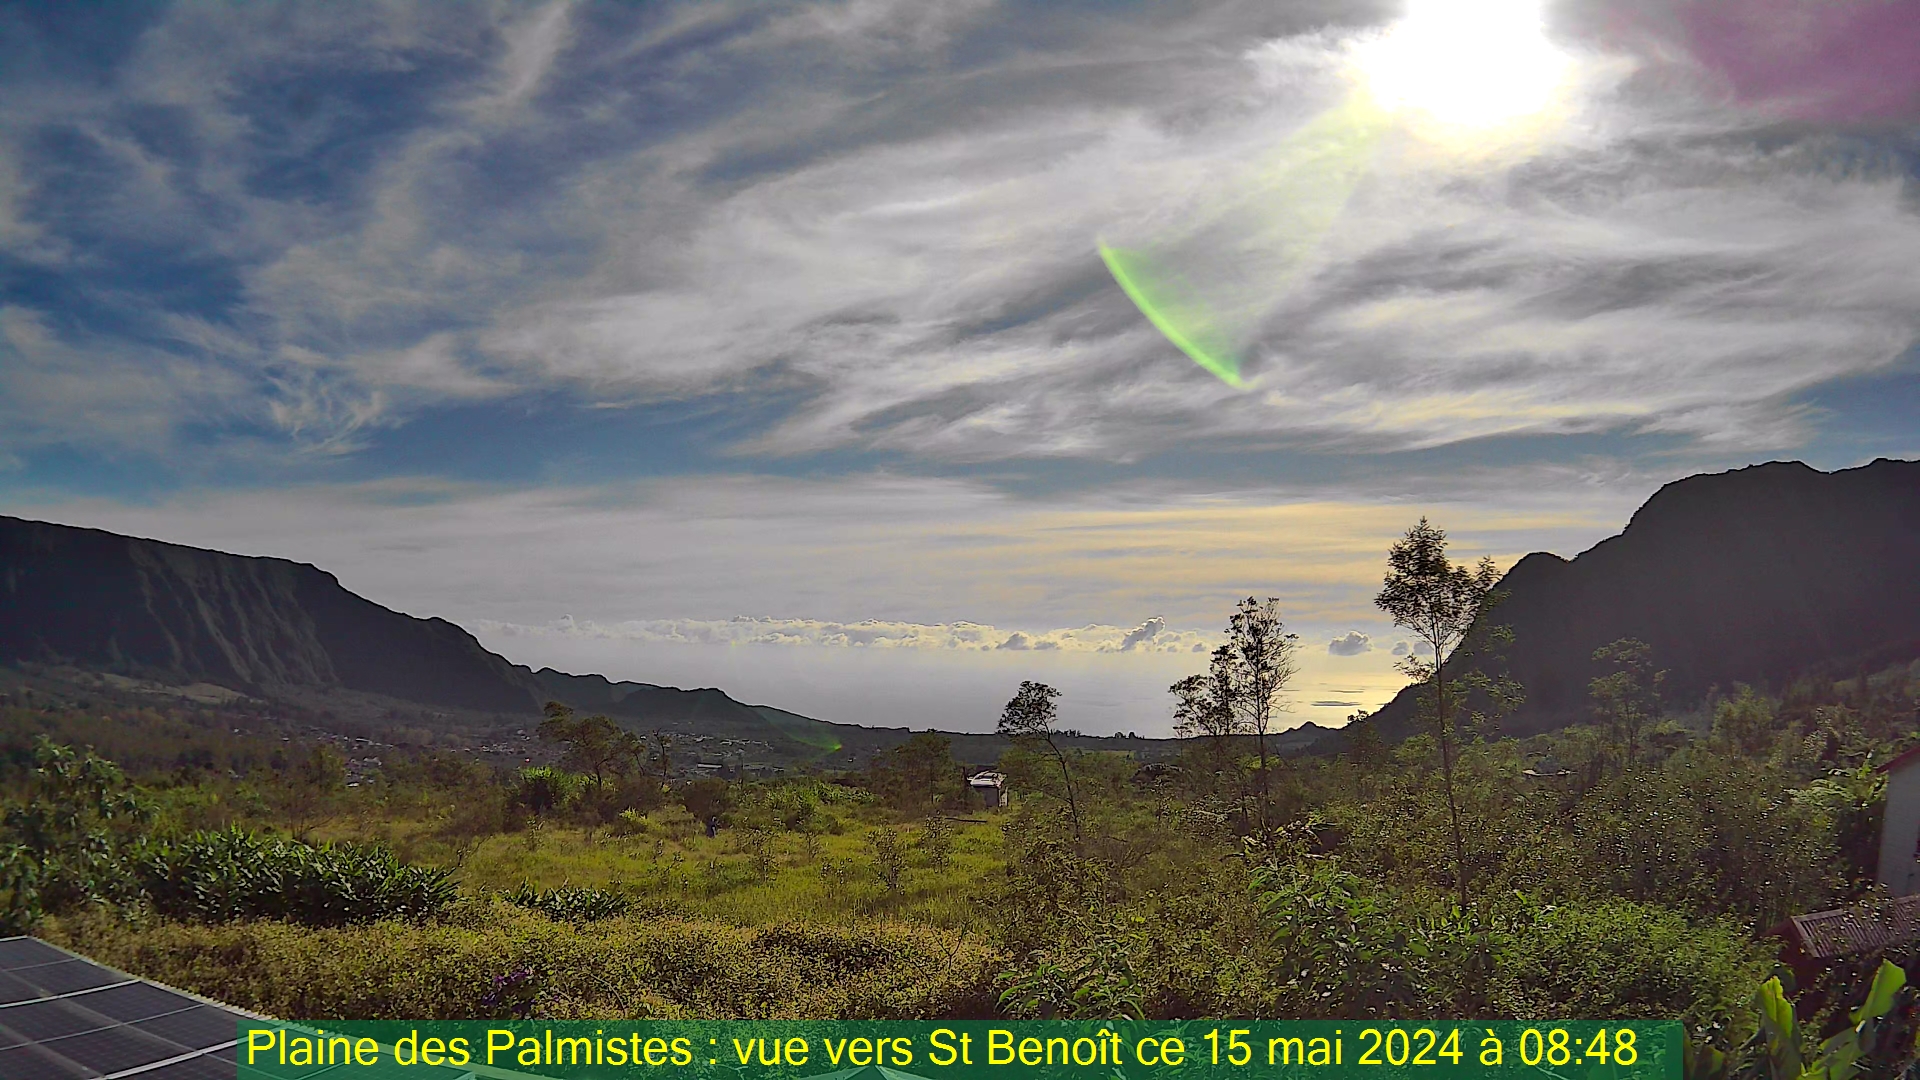 Saint-Denis (Réunion) Do. 08:50